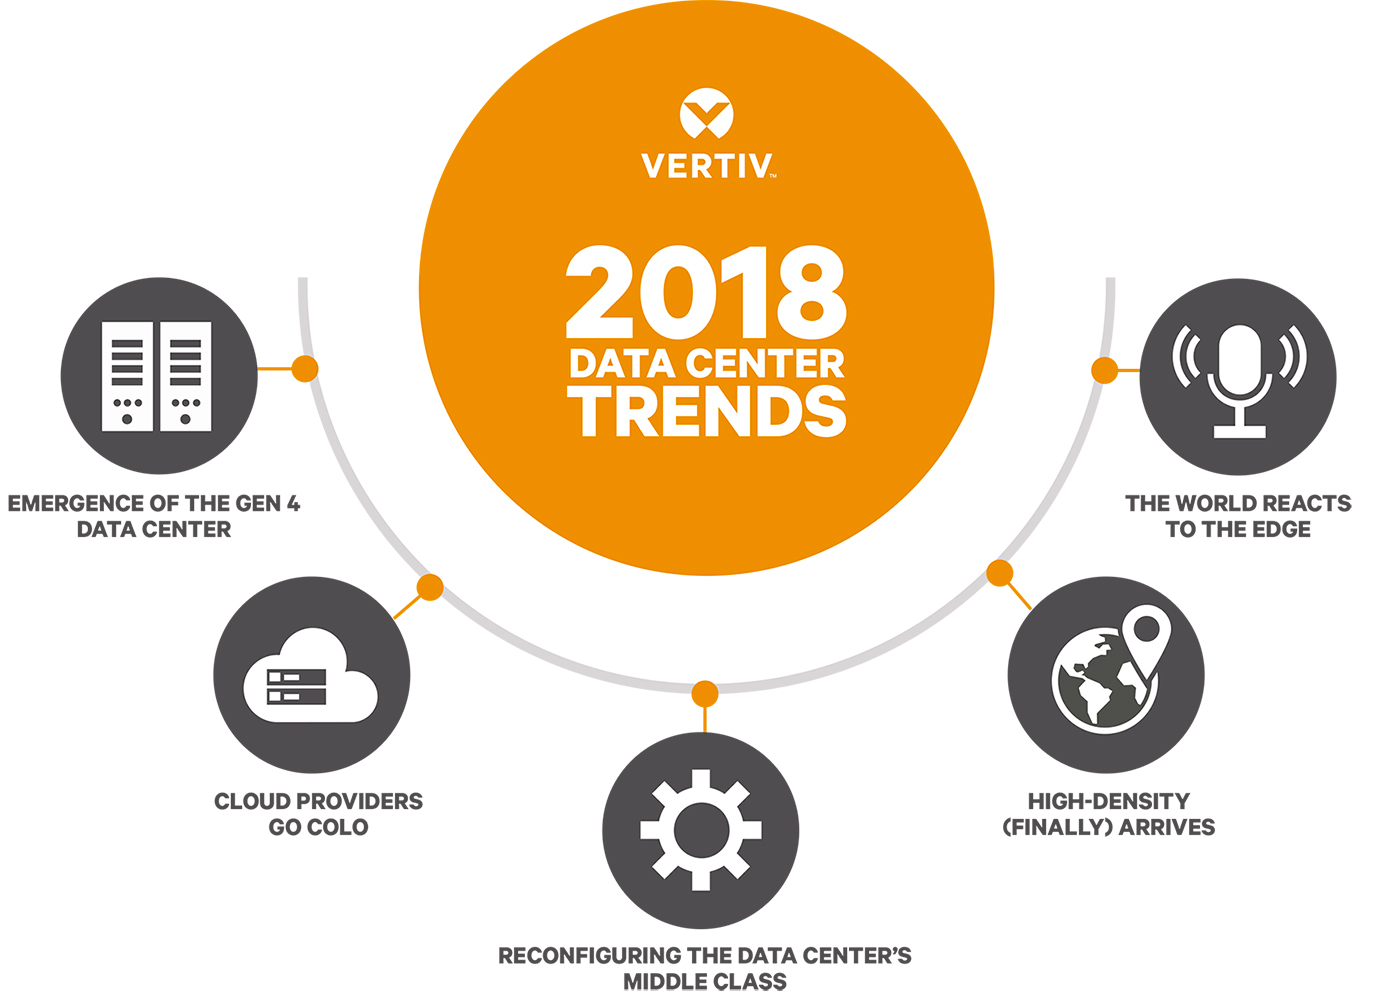 Para Vertiv, estas son las cinco tendencias que se espera que repercutan en el ecosistema de los centros de datos durante 2018...